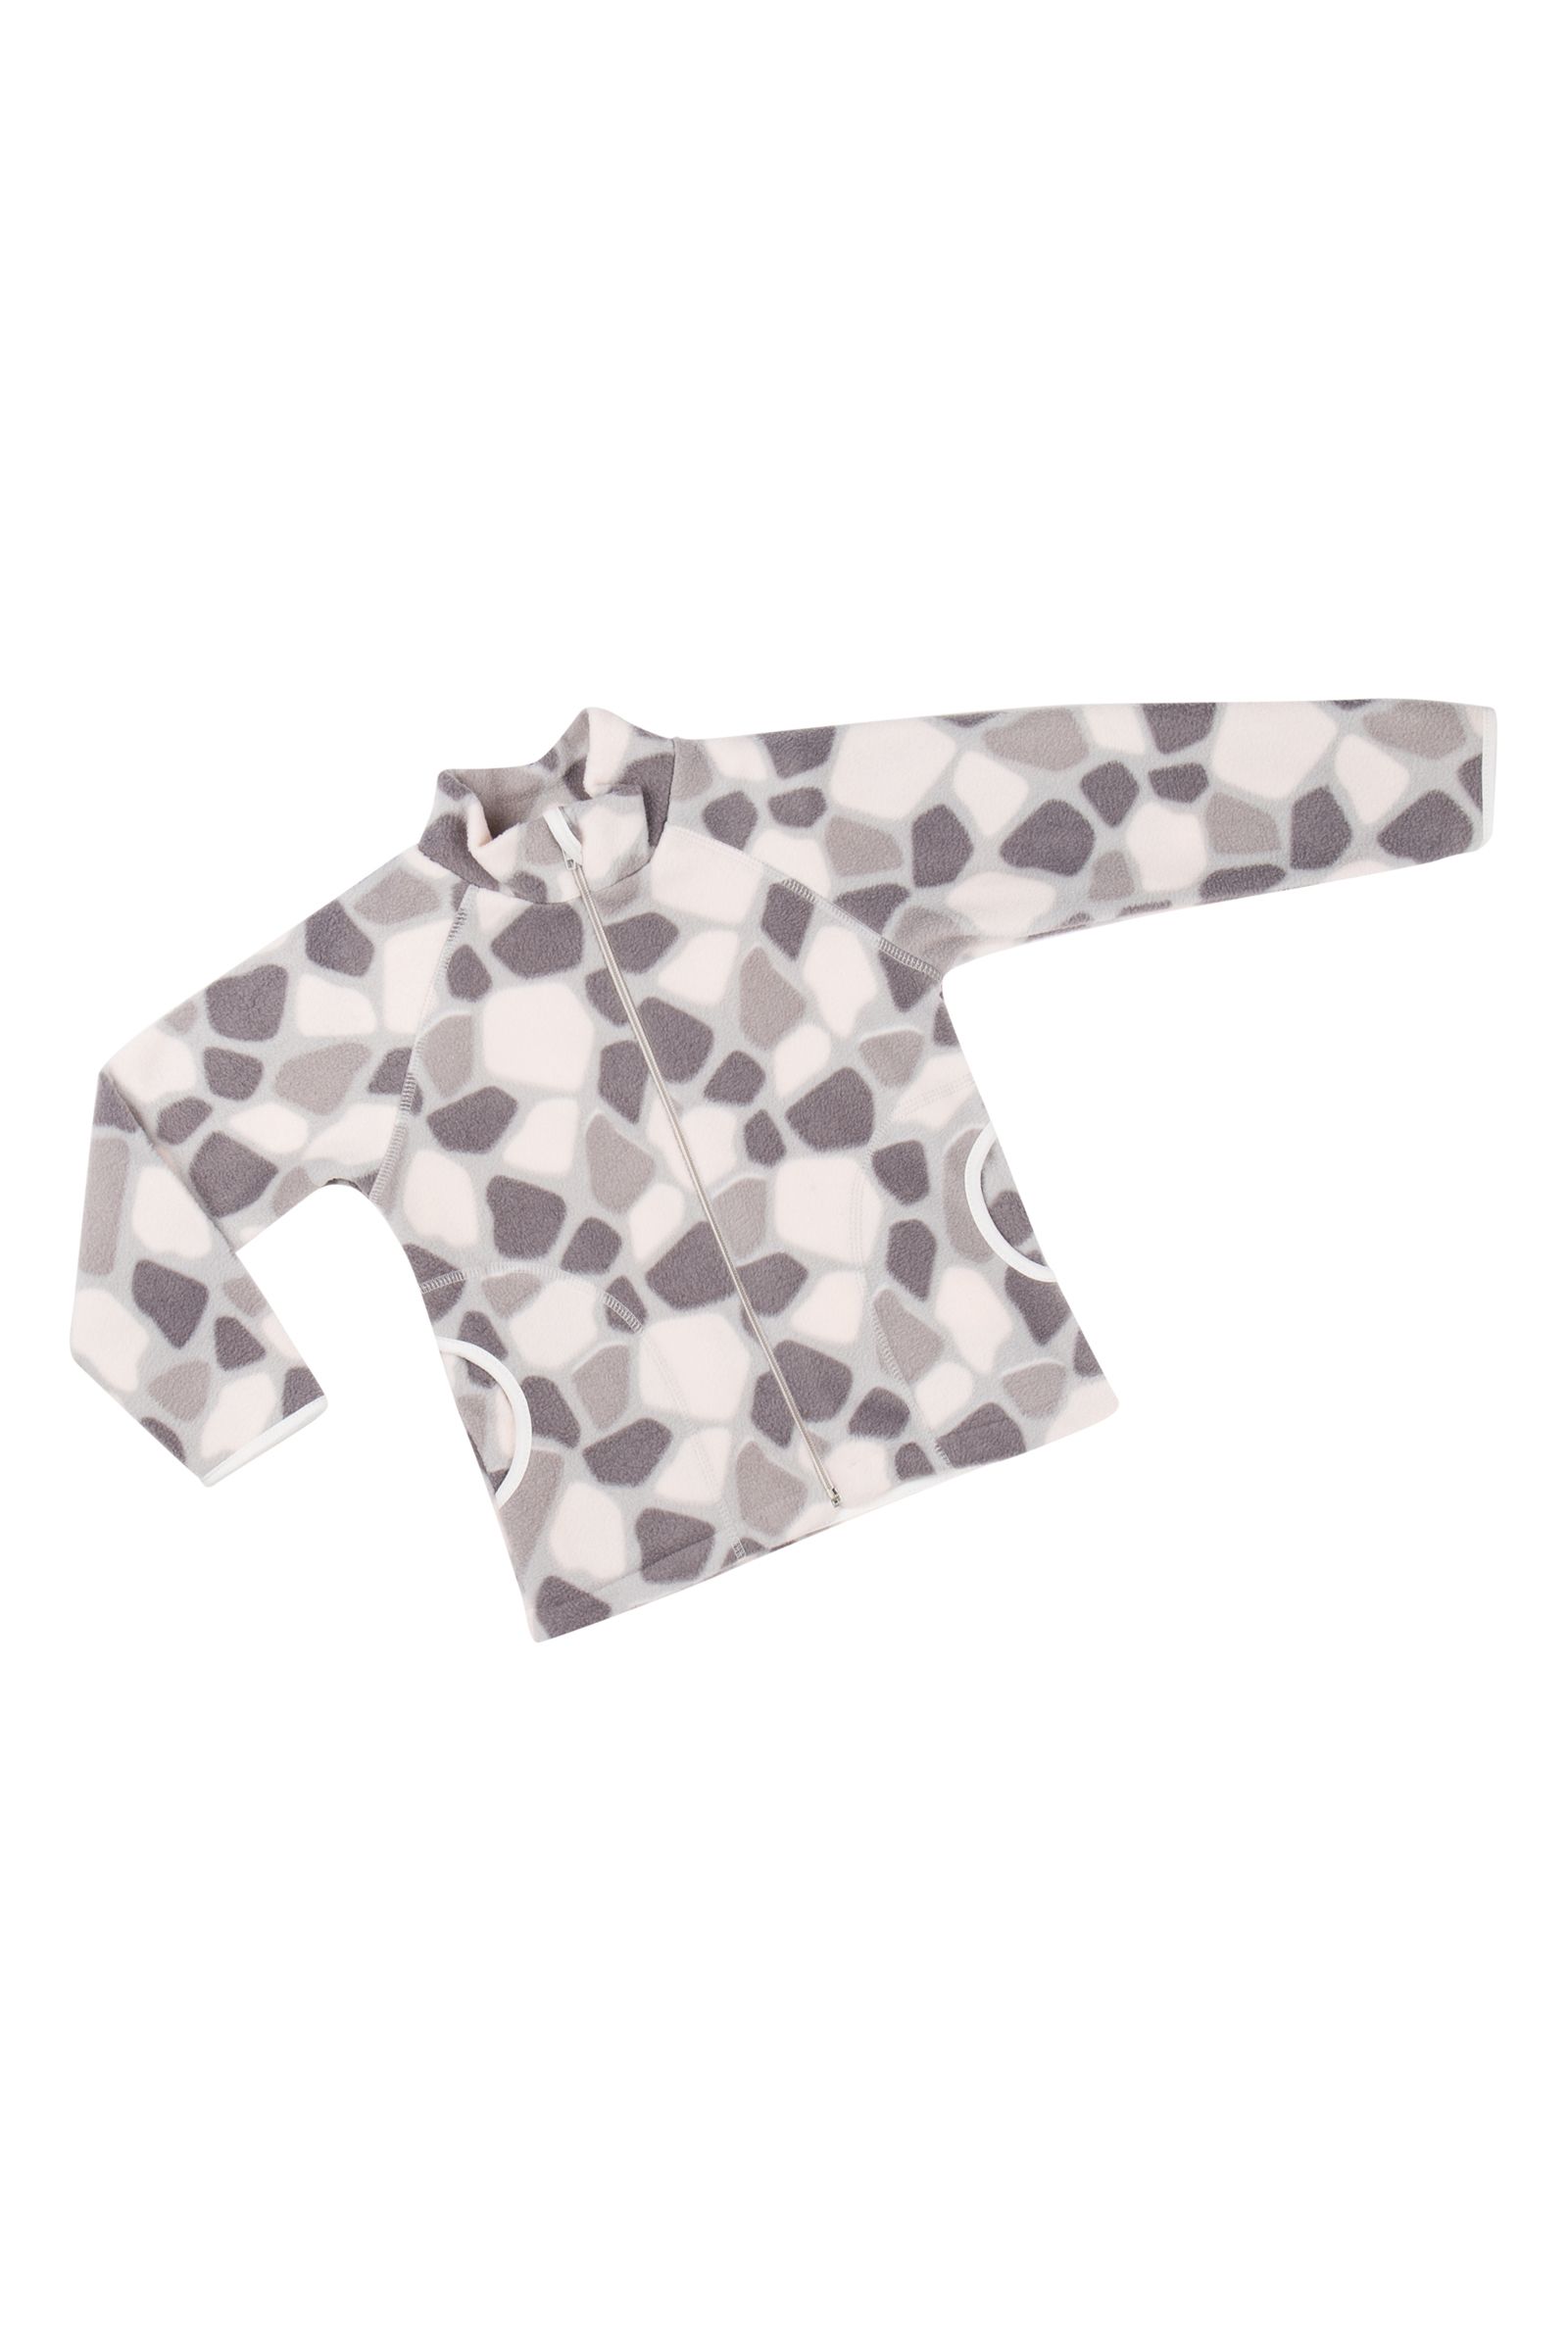 Куртка-КР08-3390 оптом от производителя детской одежды 'Алёна'